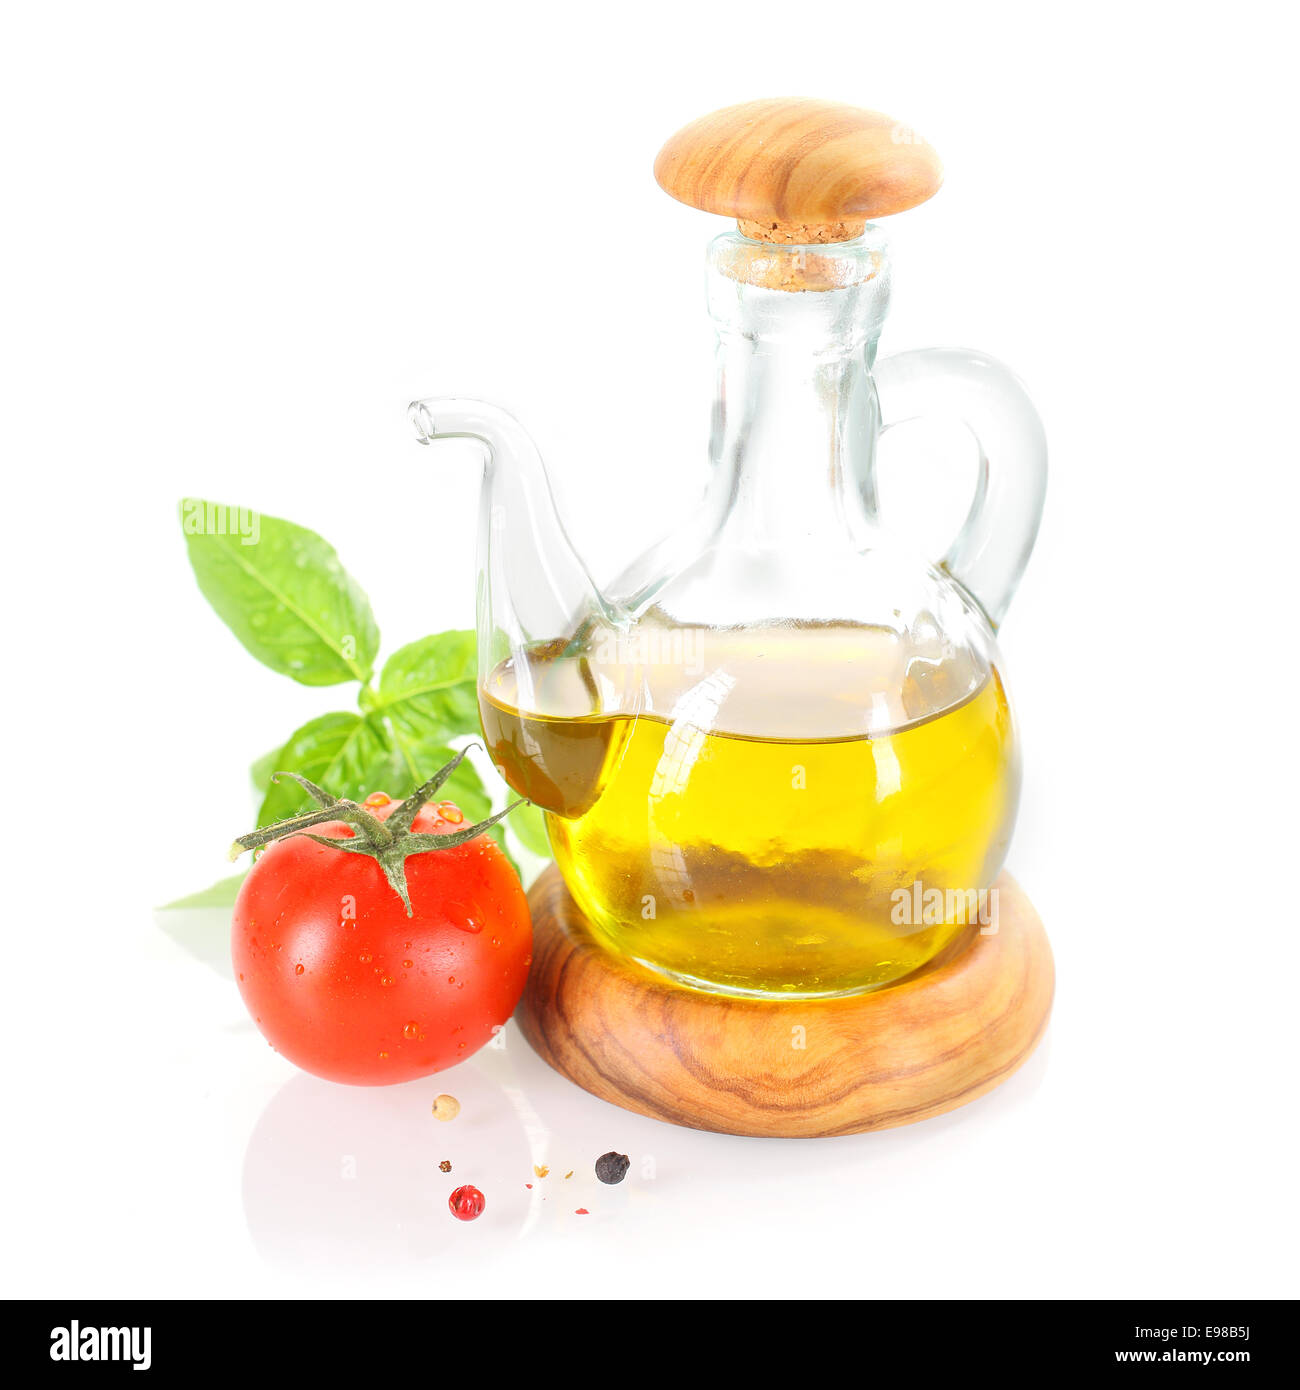 Menage Olivenöl mit Basilikum-Blätter, frische Tomaten und Paprika Körner Stockfoto